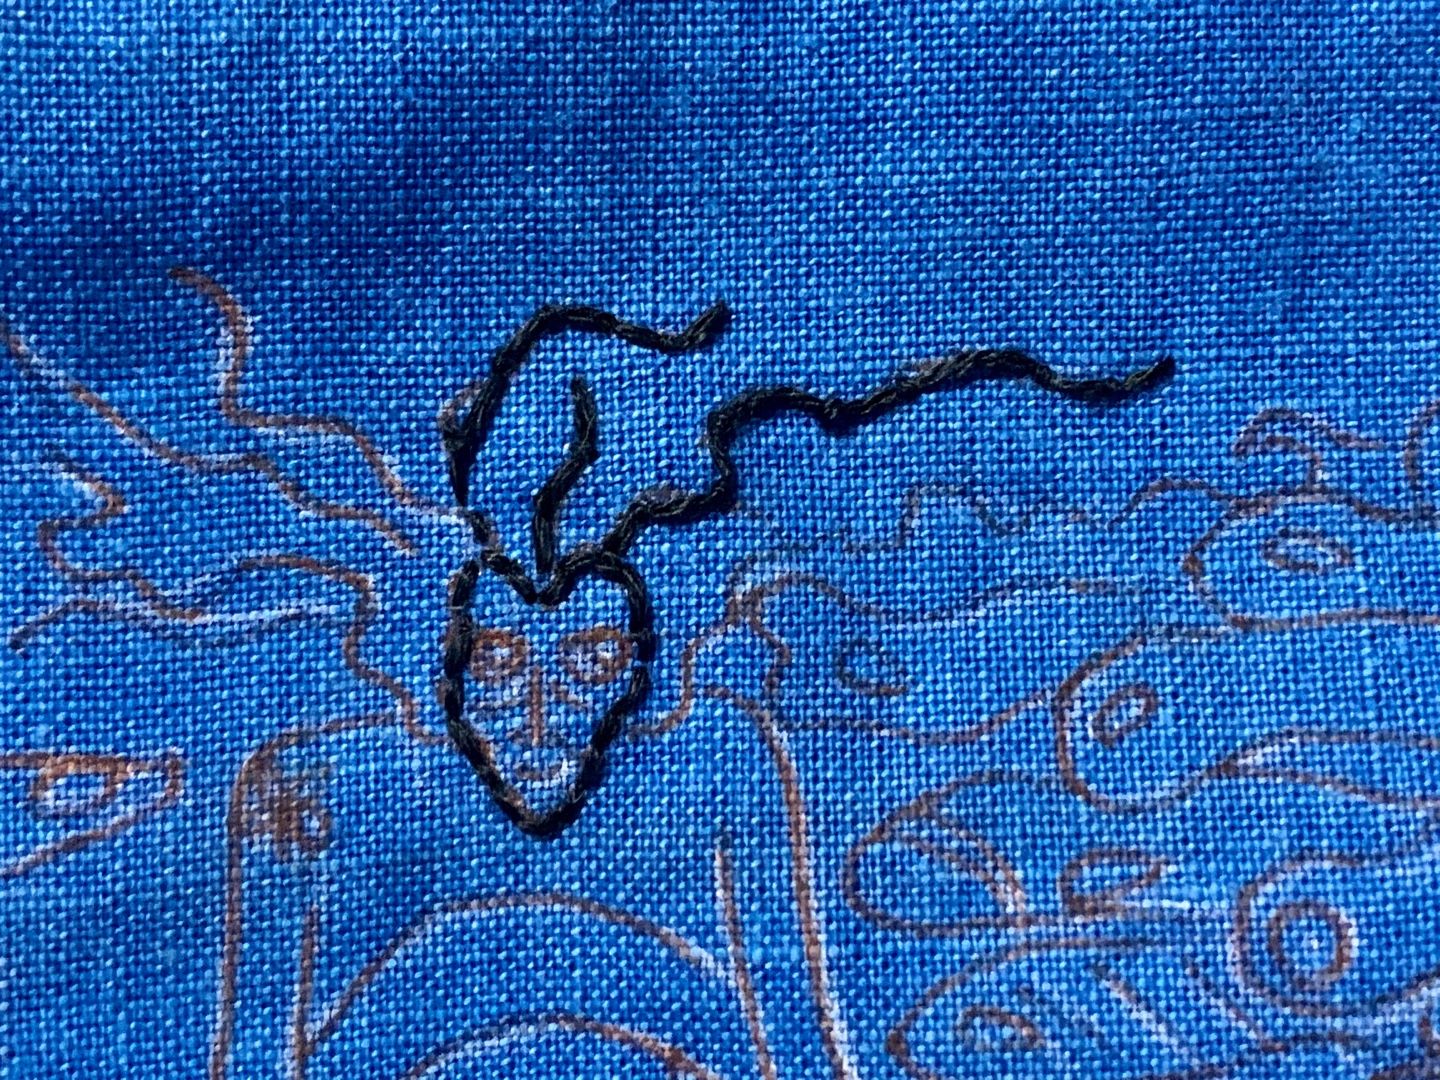 図書館から また借りた おとぎ話の幻想挿絵 人魚姫の刺繍図案をネットでも探しましたが やはりこのシュールなクラークの絵が素敵 泡になってしまう人魚姫 と もしかしたら昔人魚だったのではと思える魔女 Music Land 私の庭の花たち 楽天ブログ